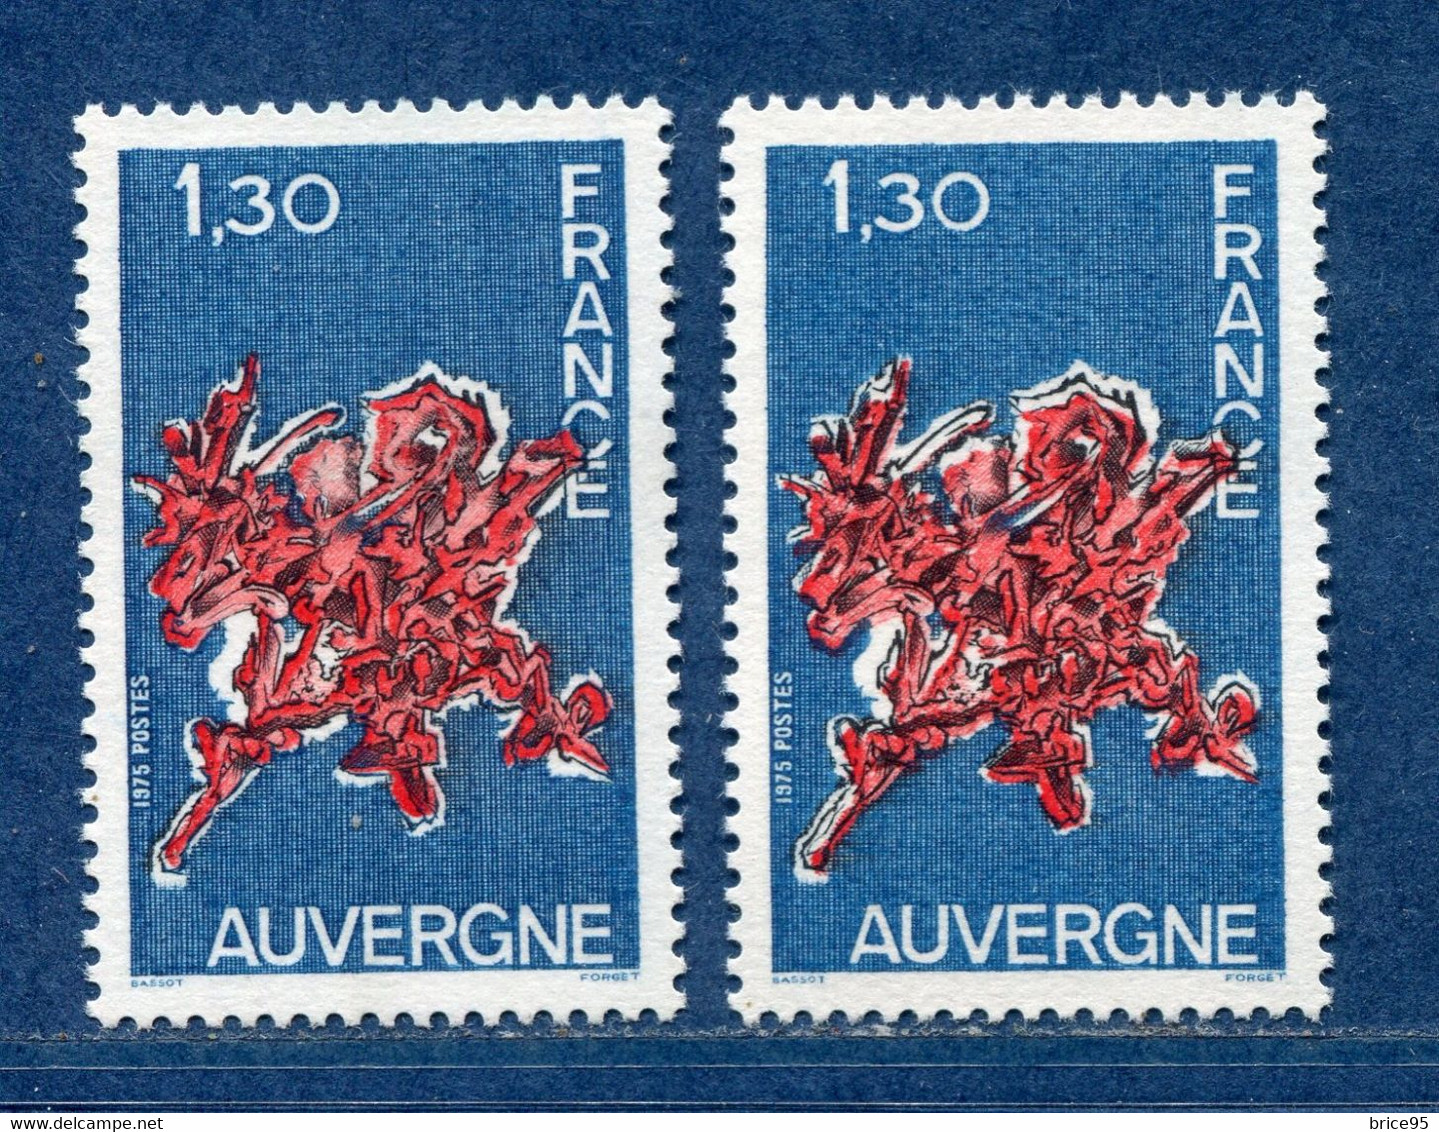 ⭐ France - Variété - YT N° 1850 - Couleurs - Pétouille - Neuf Sans Charnière - 1975 ⭐ - Nuevos